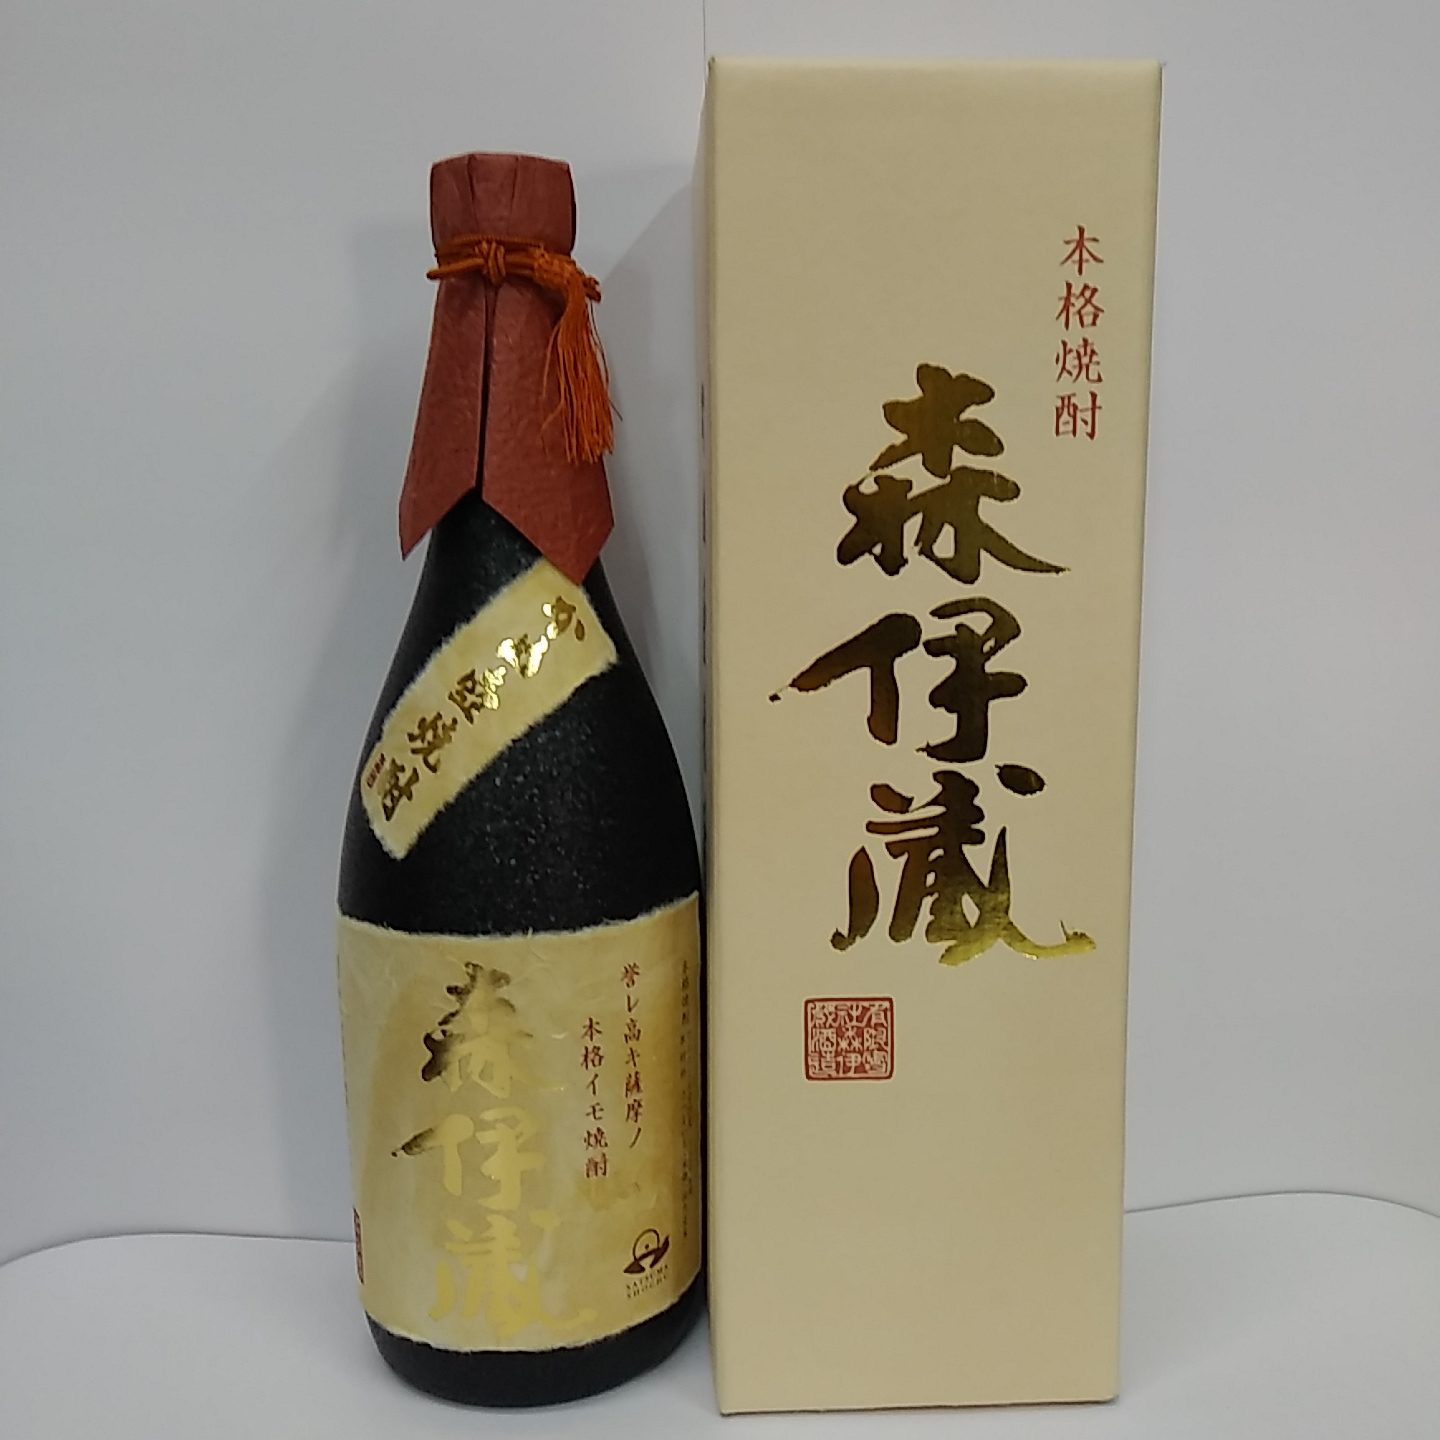 『森伊蔵・金ラベル』四合瓶(720ml)【芋焼酎】（25度） | 有限会社 